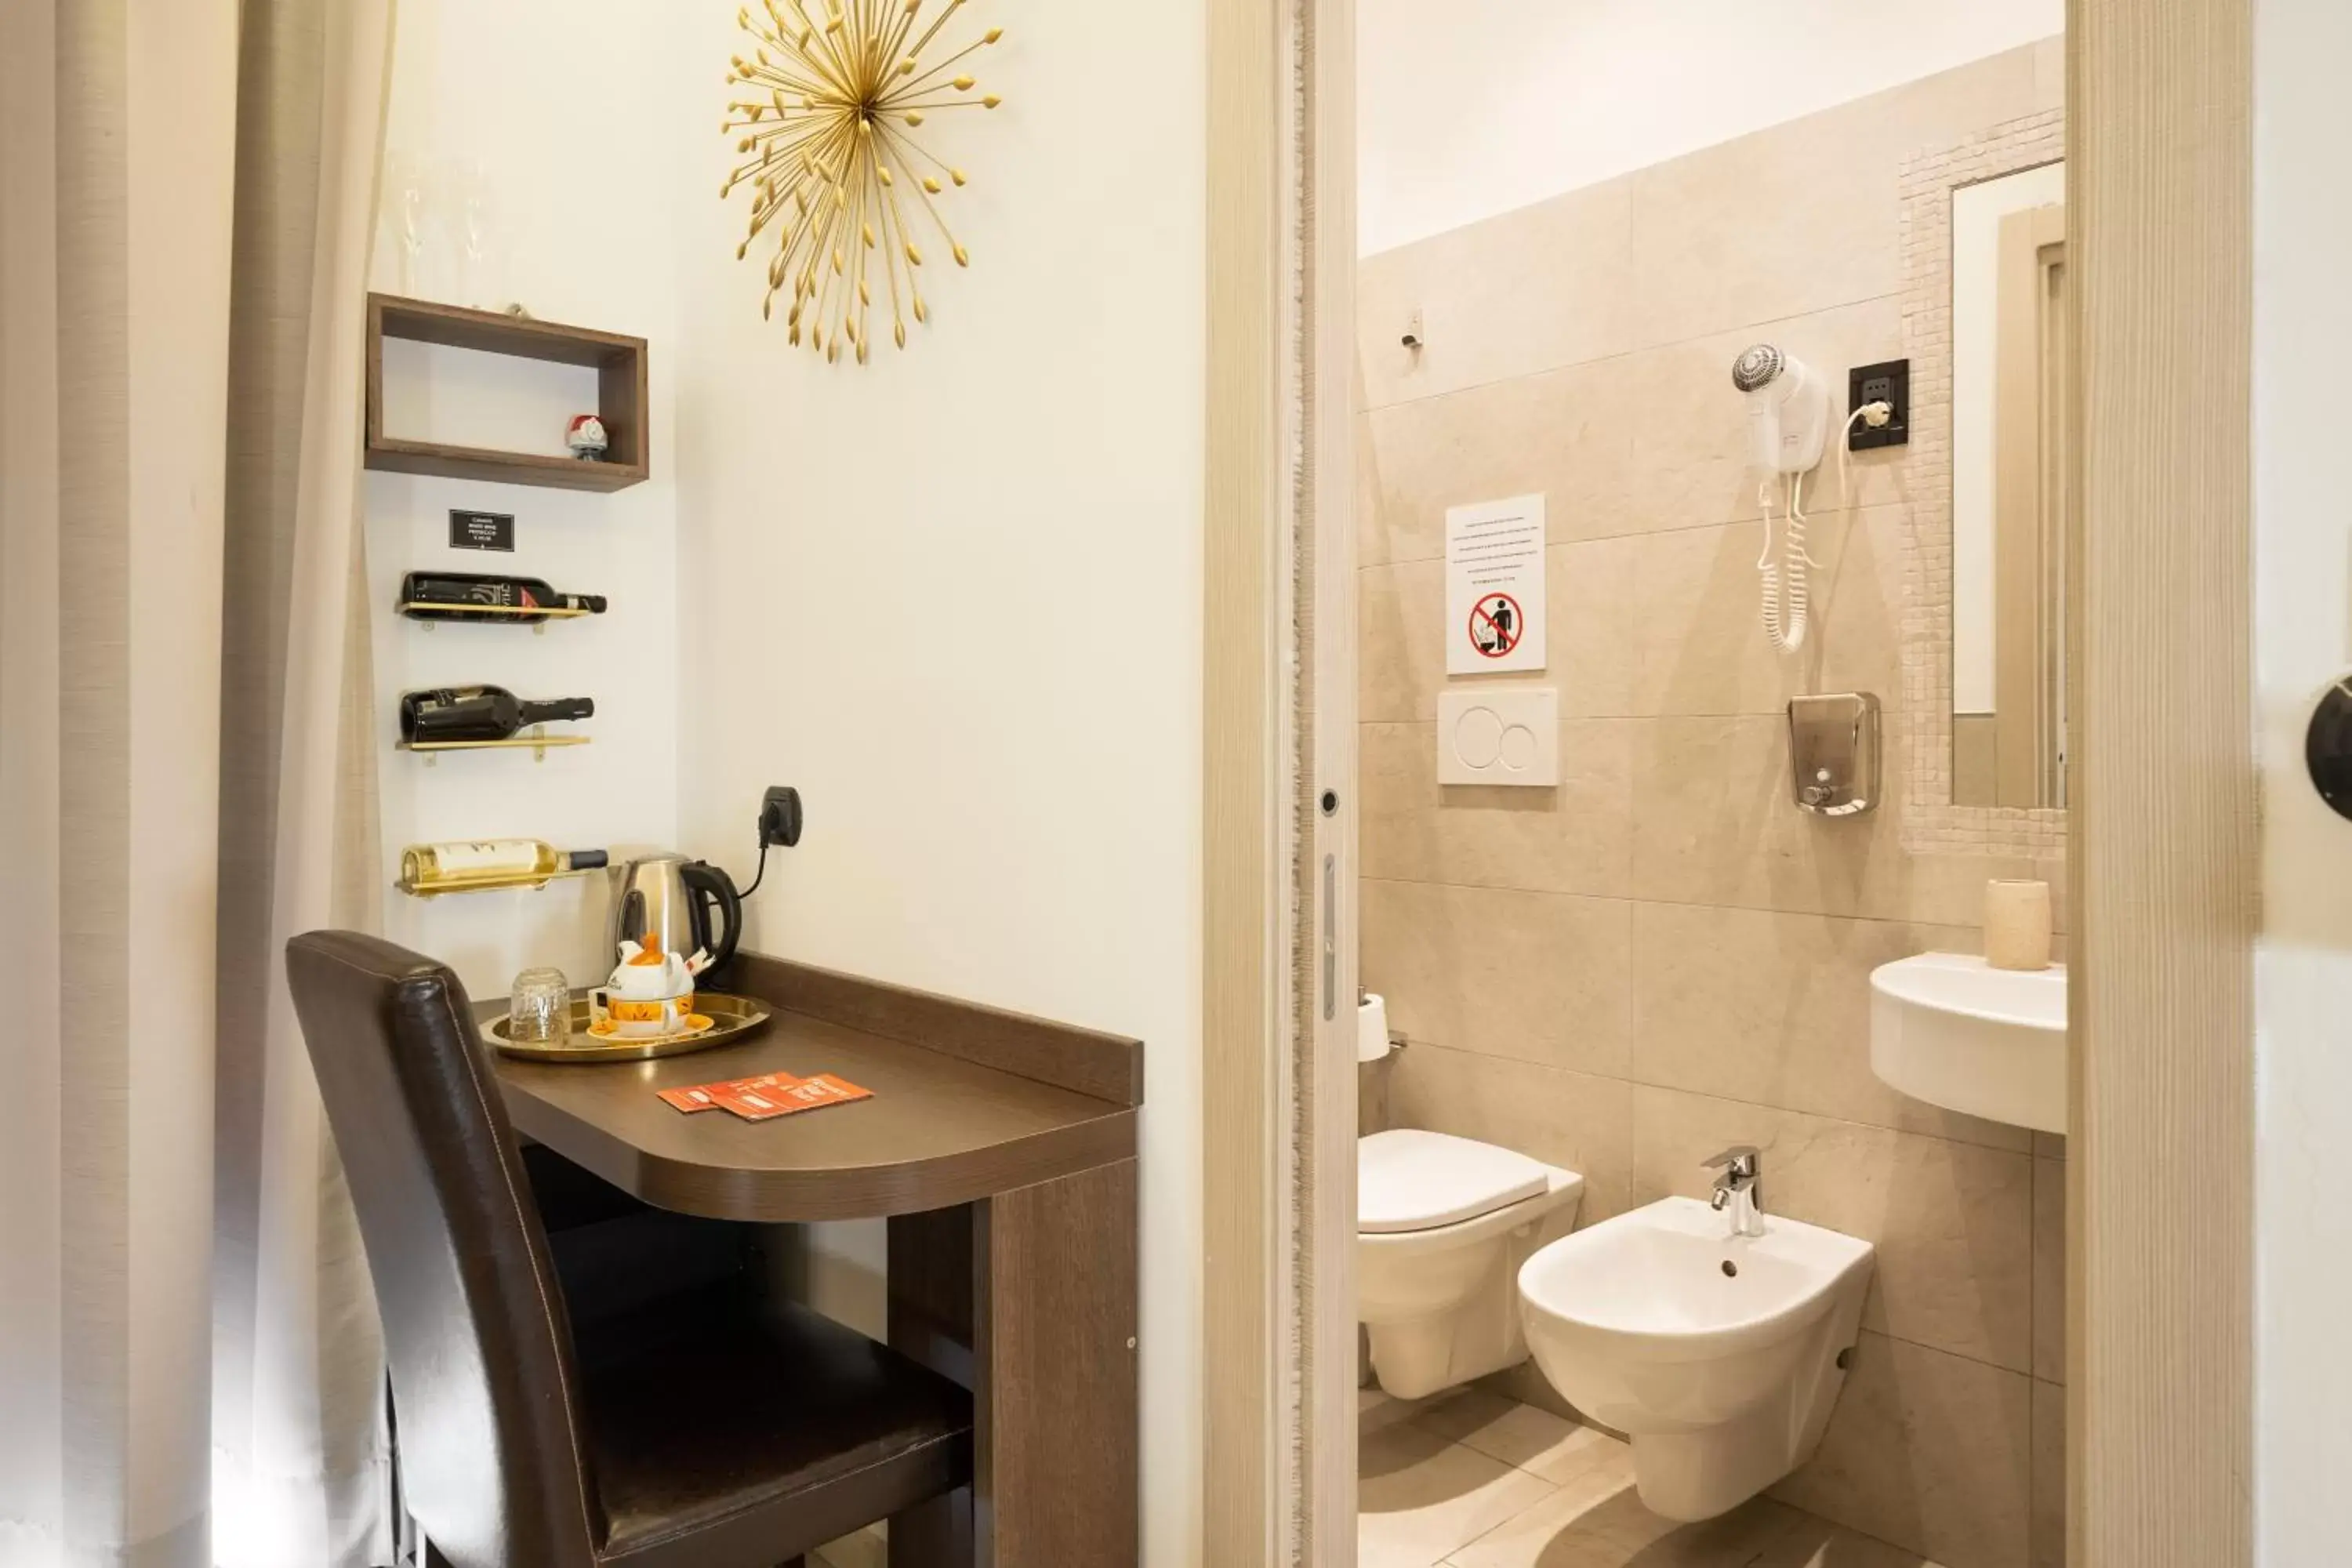 Bathroom in Hotel Bellavista